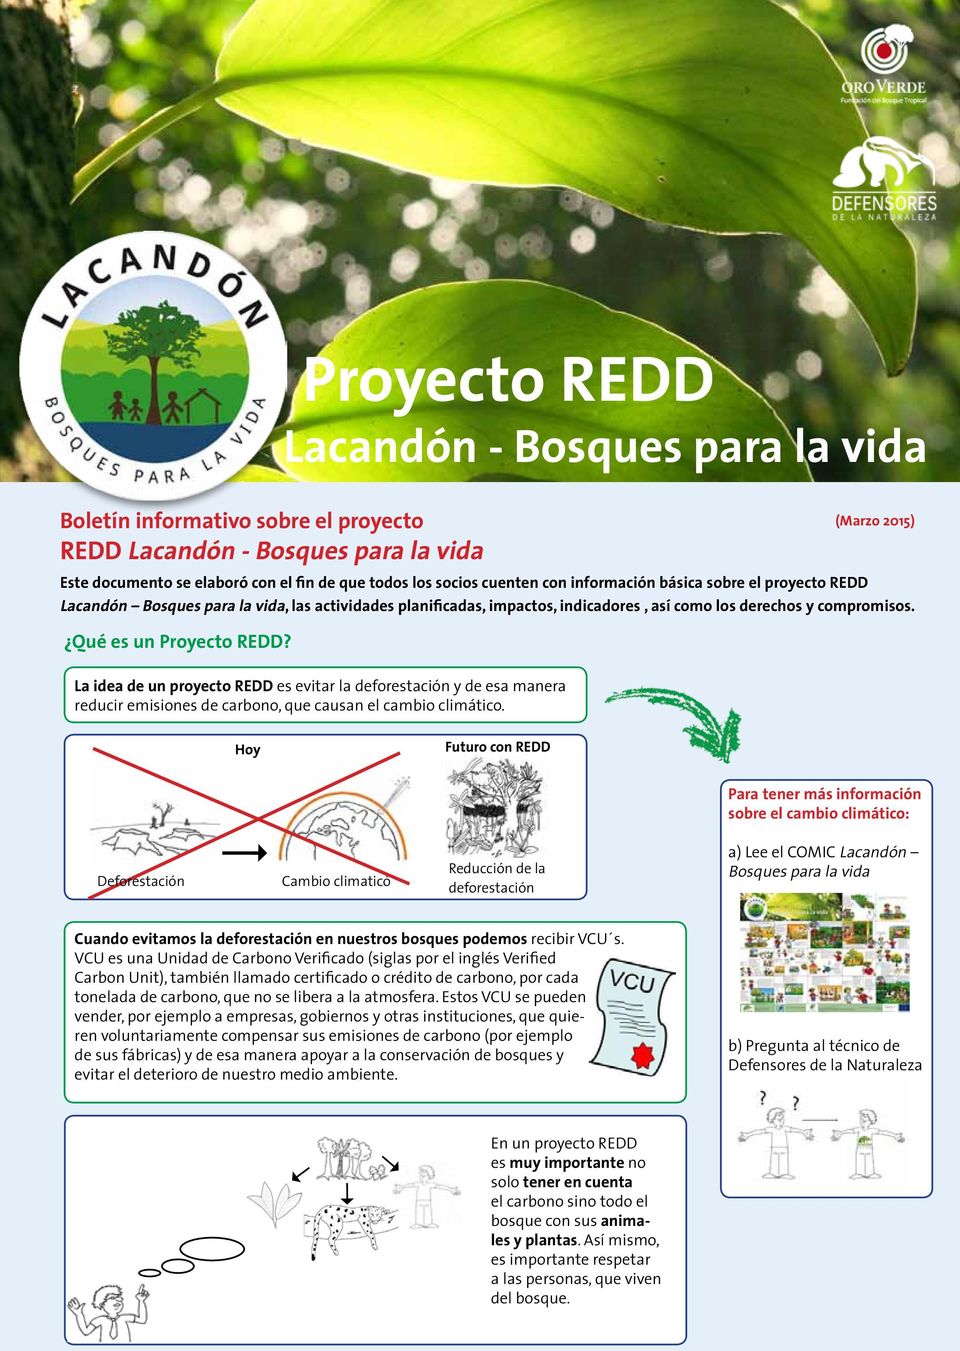 Lacandón - Bosques para la vida La idea de un proyecto REDD es evitar la deforestación y de esa manera reducir emisiones de carbono, que causan el cambio climático.